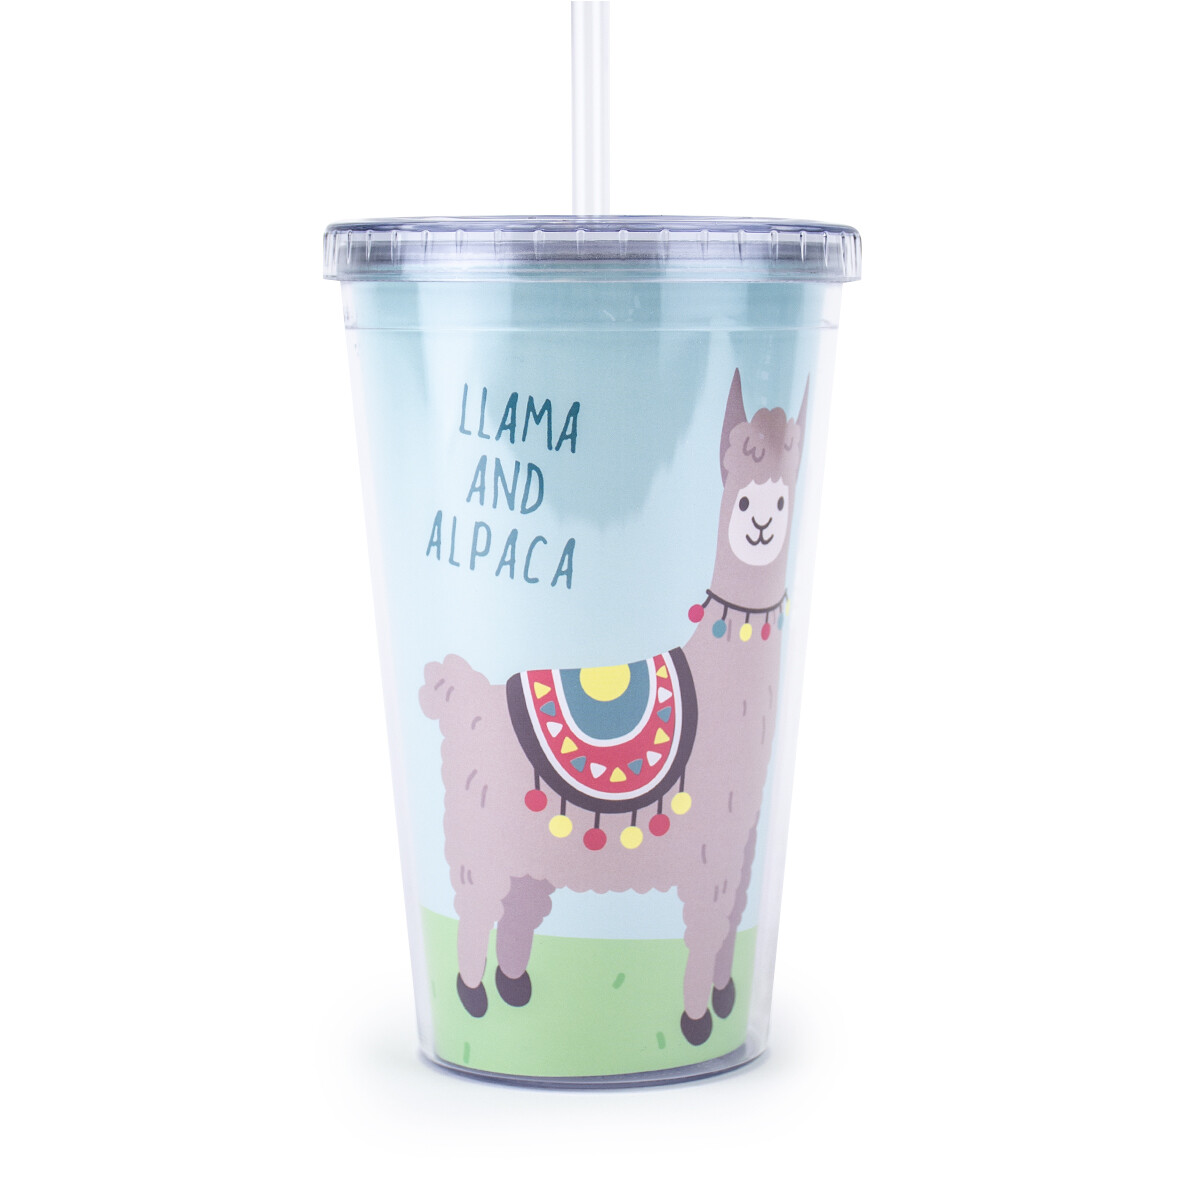 Vaso Con Tapa Y Sorbito Llama - Llama And Alpaca 